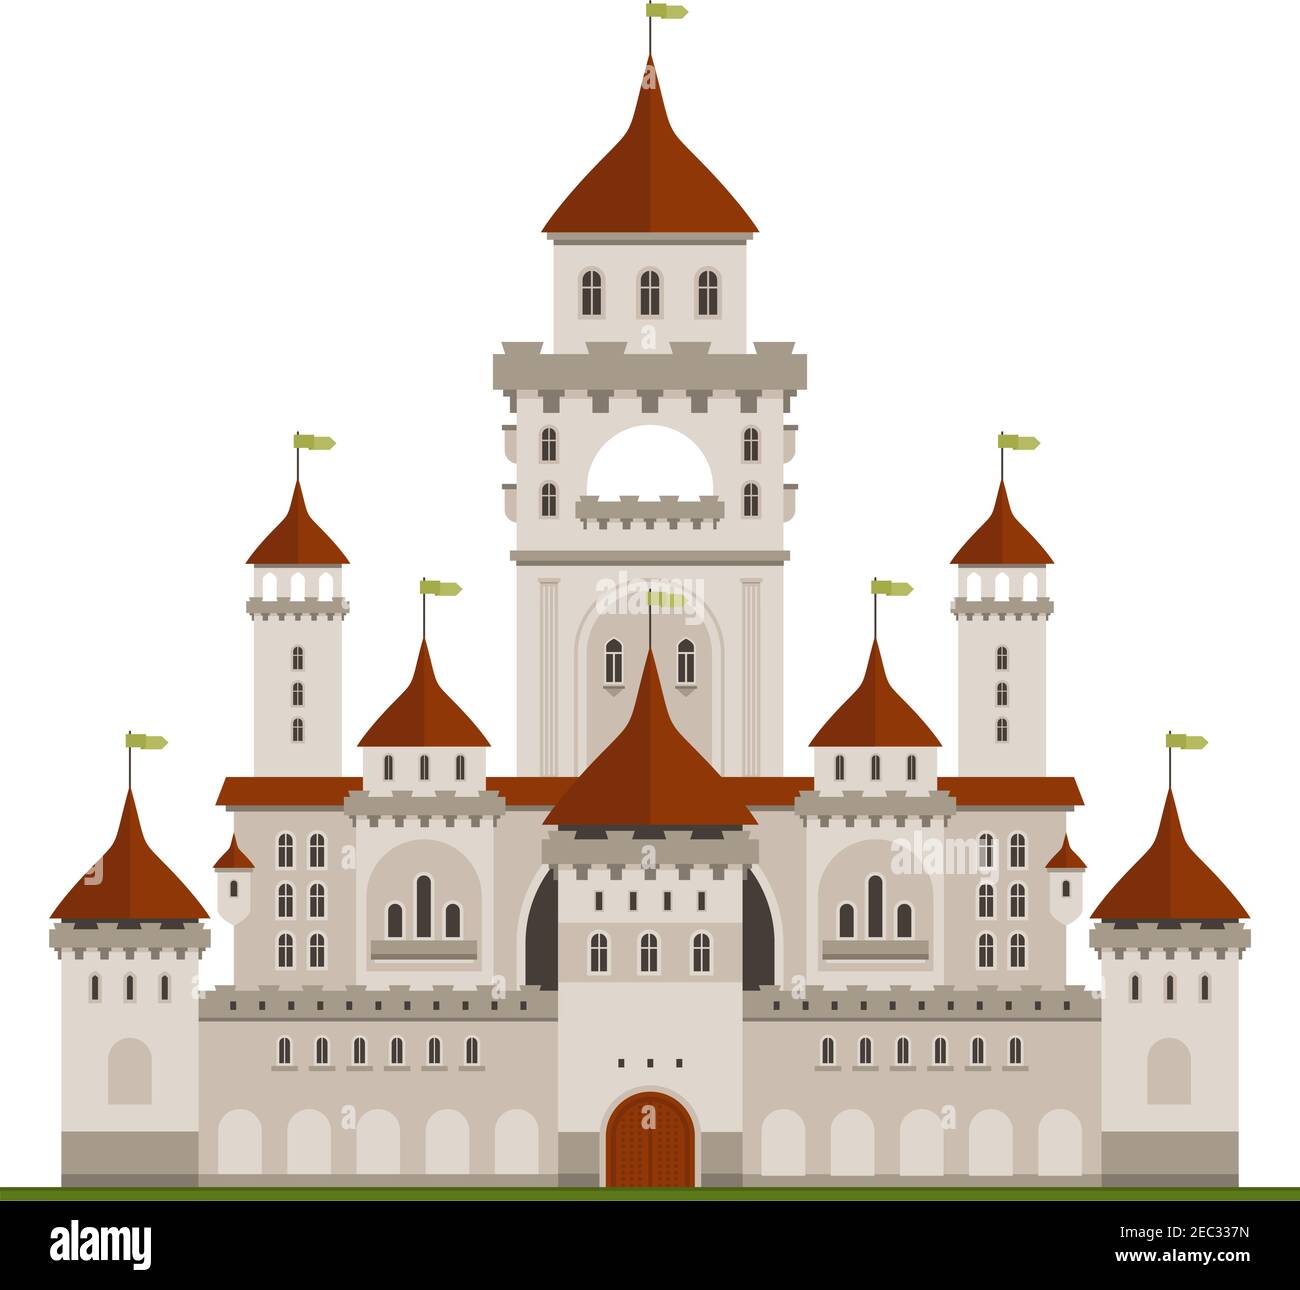 Residenza reale di famiglia simbolo di pietra grigia castello con mura di guardia e palazzo principale con torri, terrazze ad arco e torrette coniche con bandiere verdi. Illustrazione Vettoriale